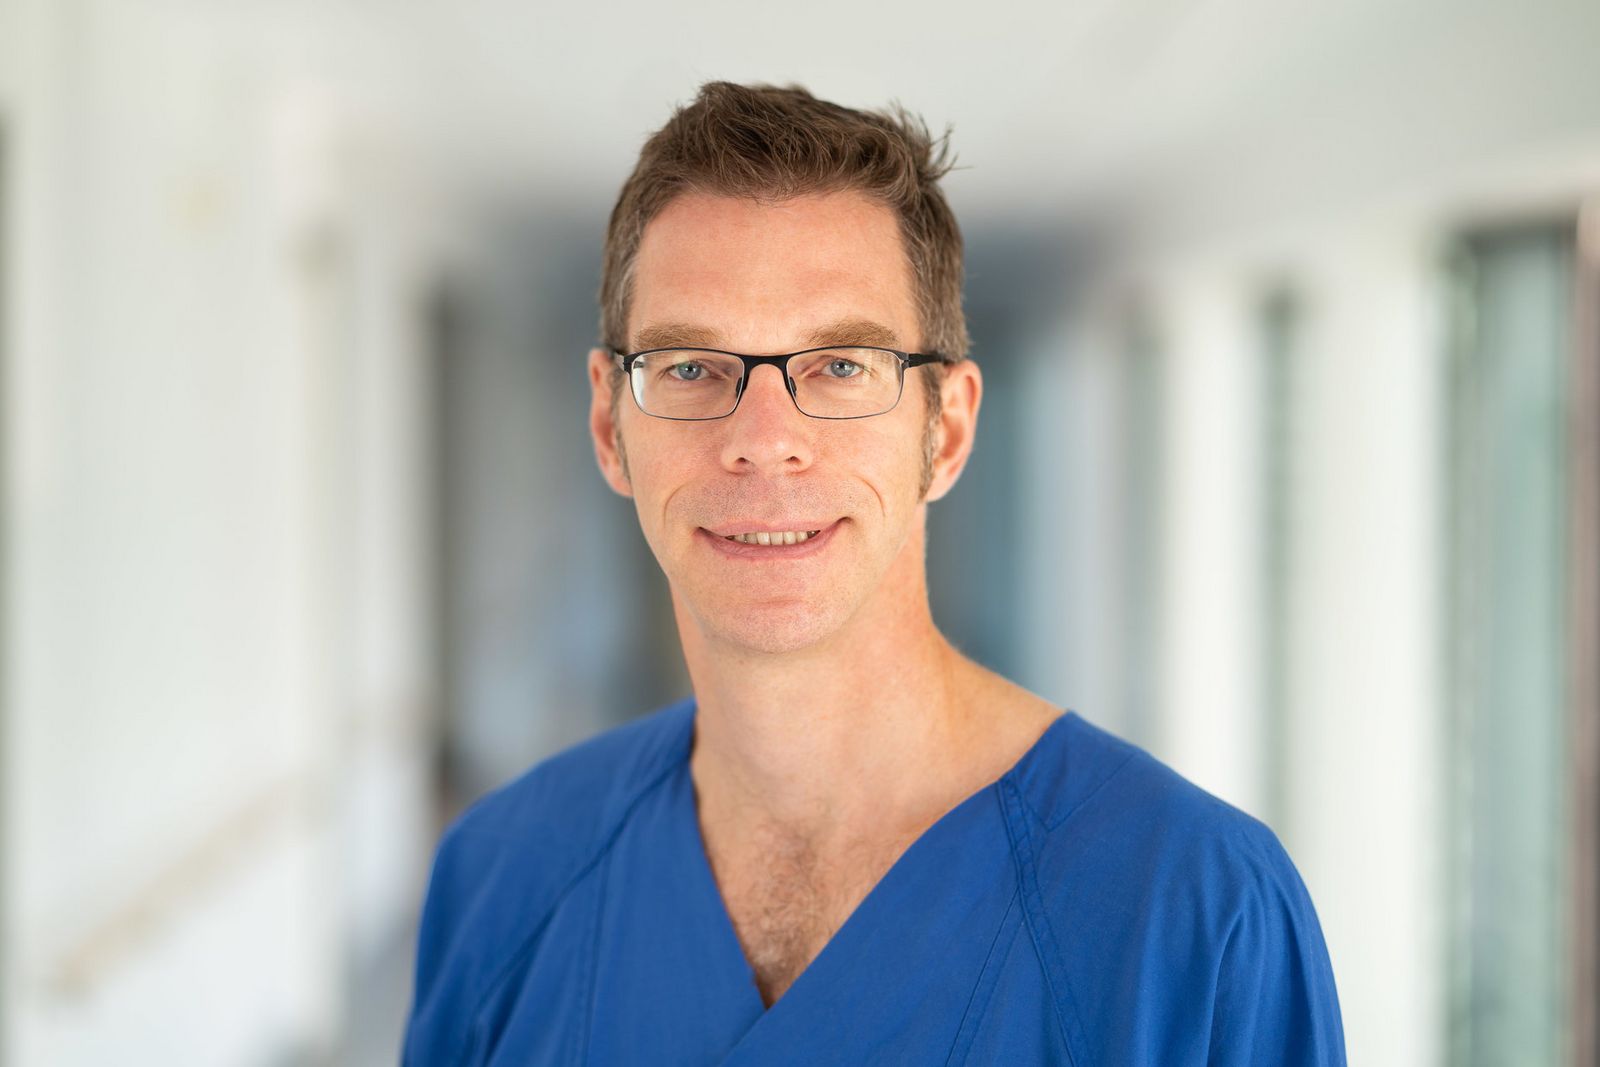 Facharzt für Innere Medizin mit dem Schwerpunkt Gastroenterologie Dr. med. Reiner Köck